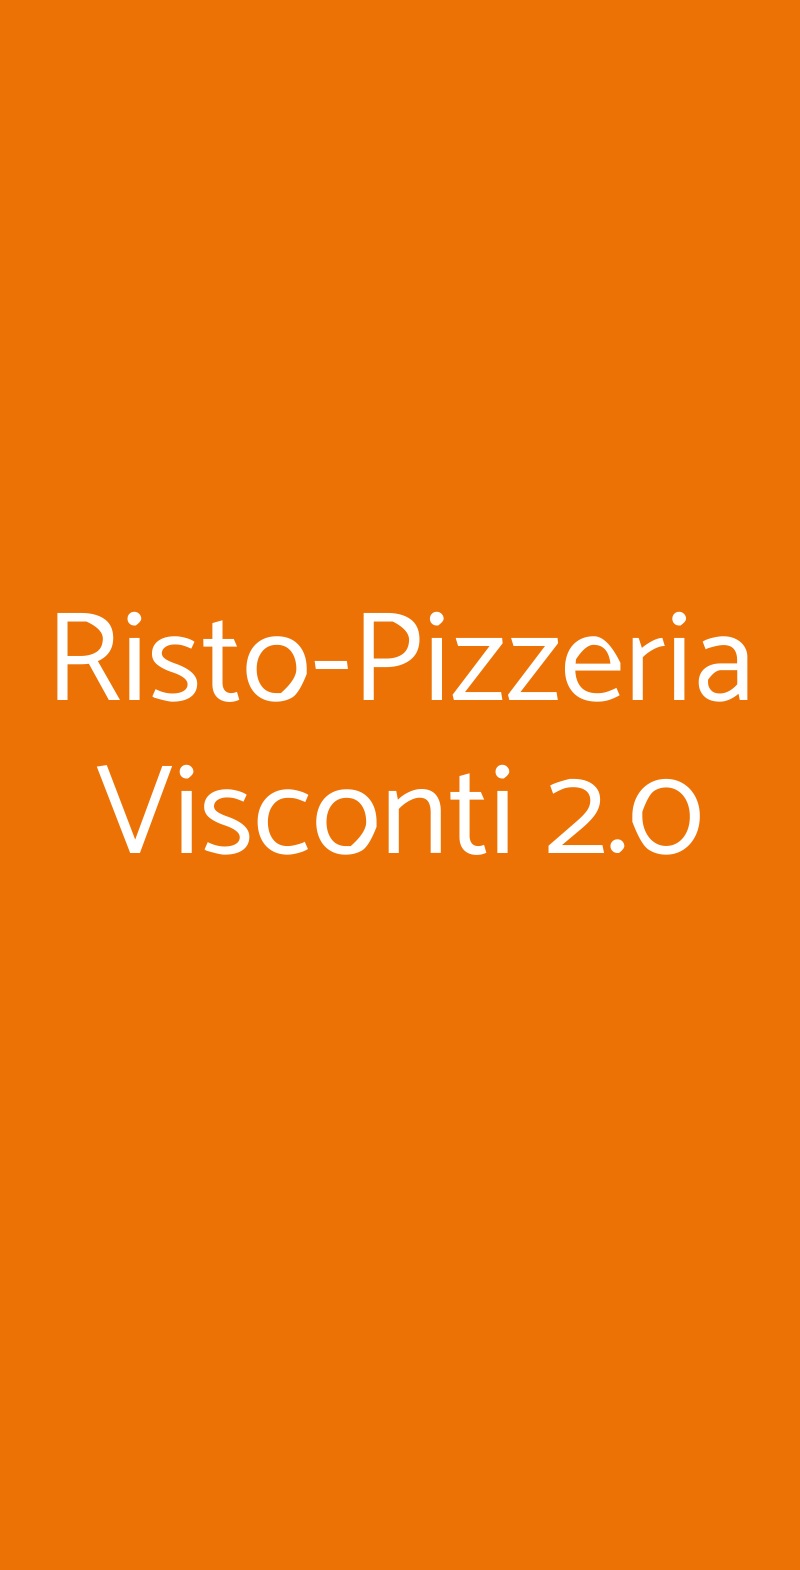 Risto-Pizzeria Visconti 2.0 Roma menù 1 pagina